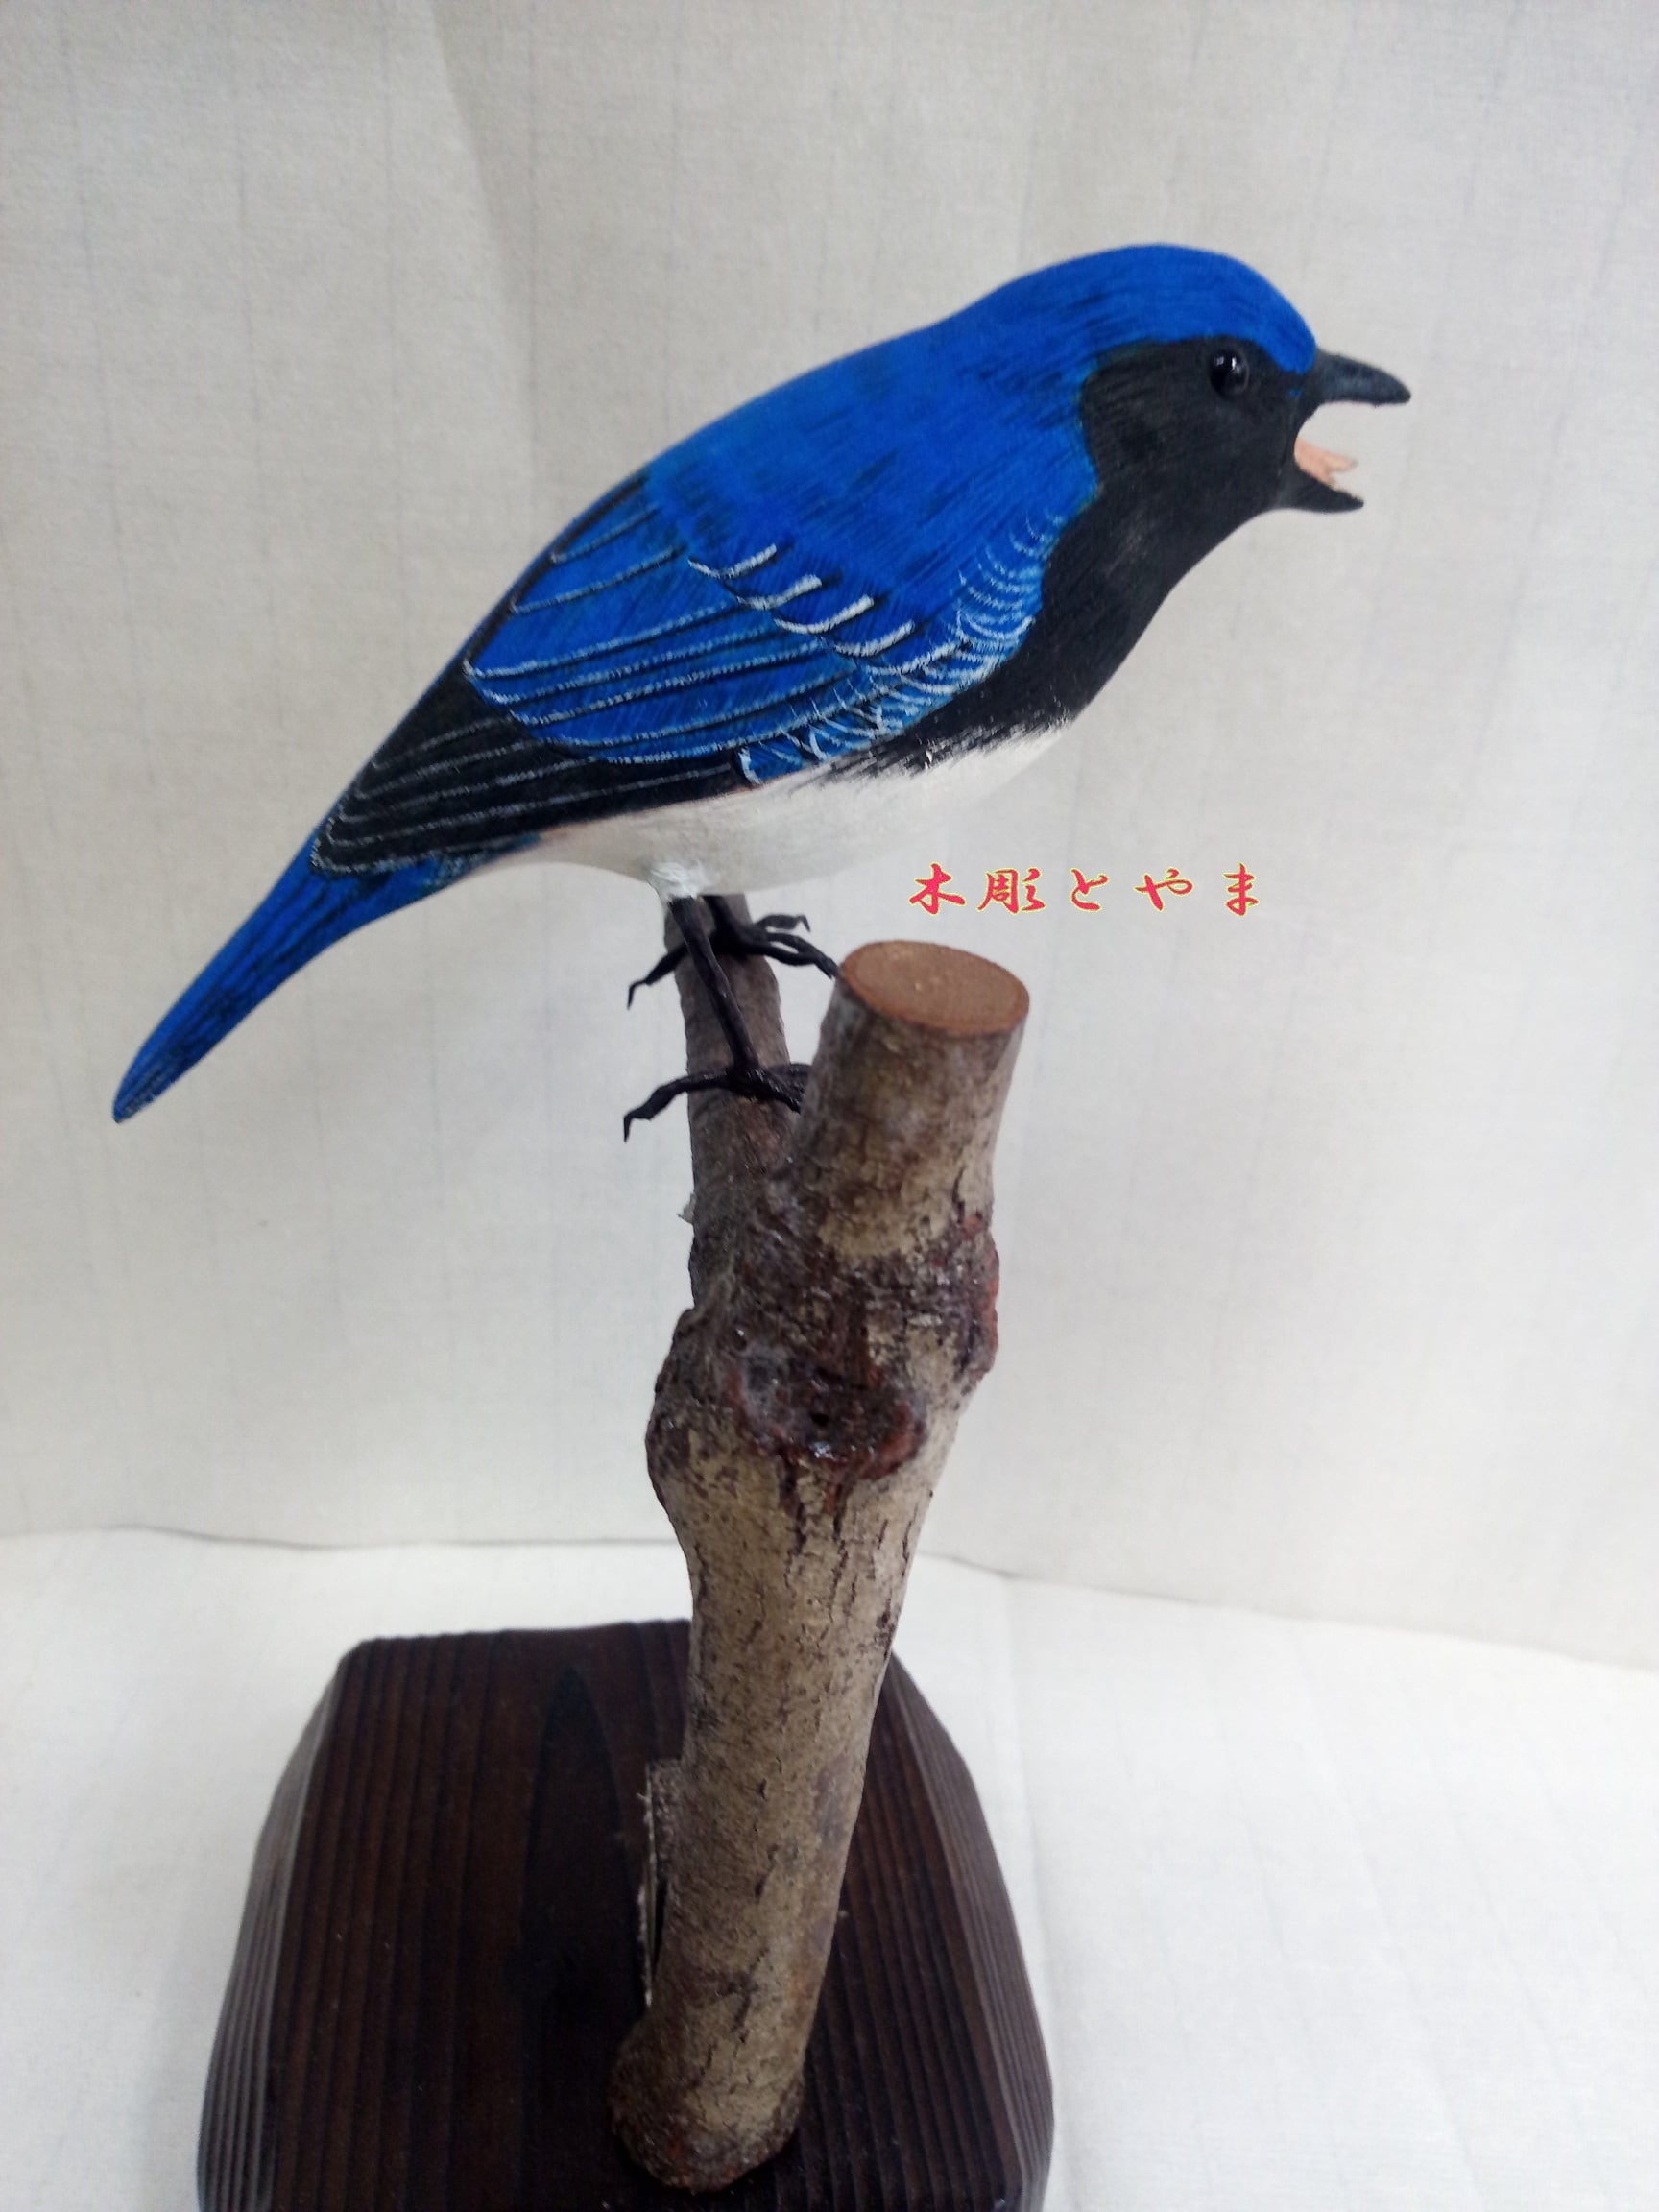 ジョウビタキ 木彫りの野鳥 バードカービング 野鳥彫刻 - 彫刻